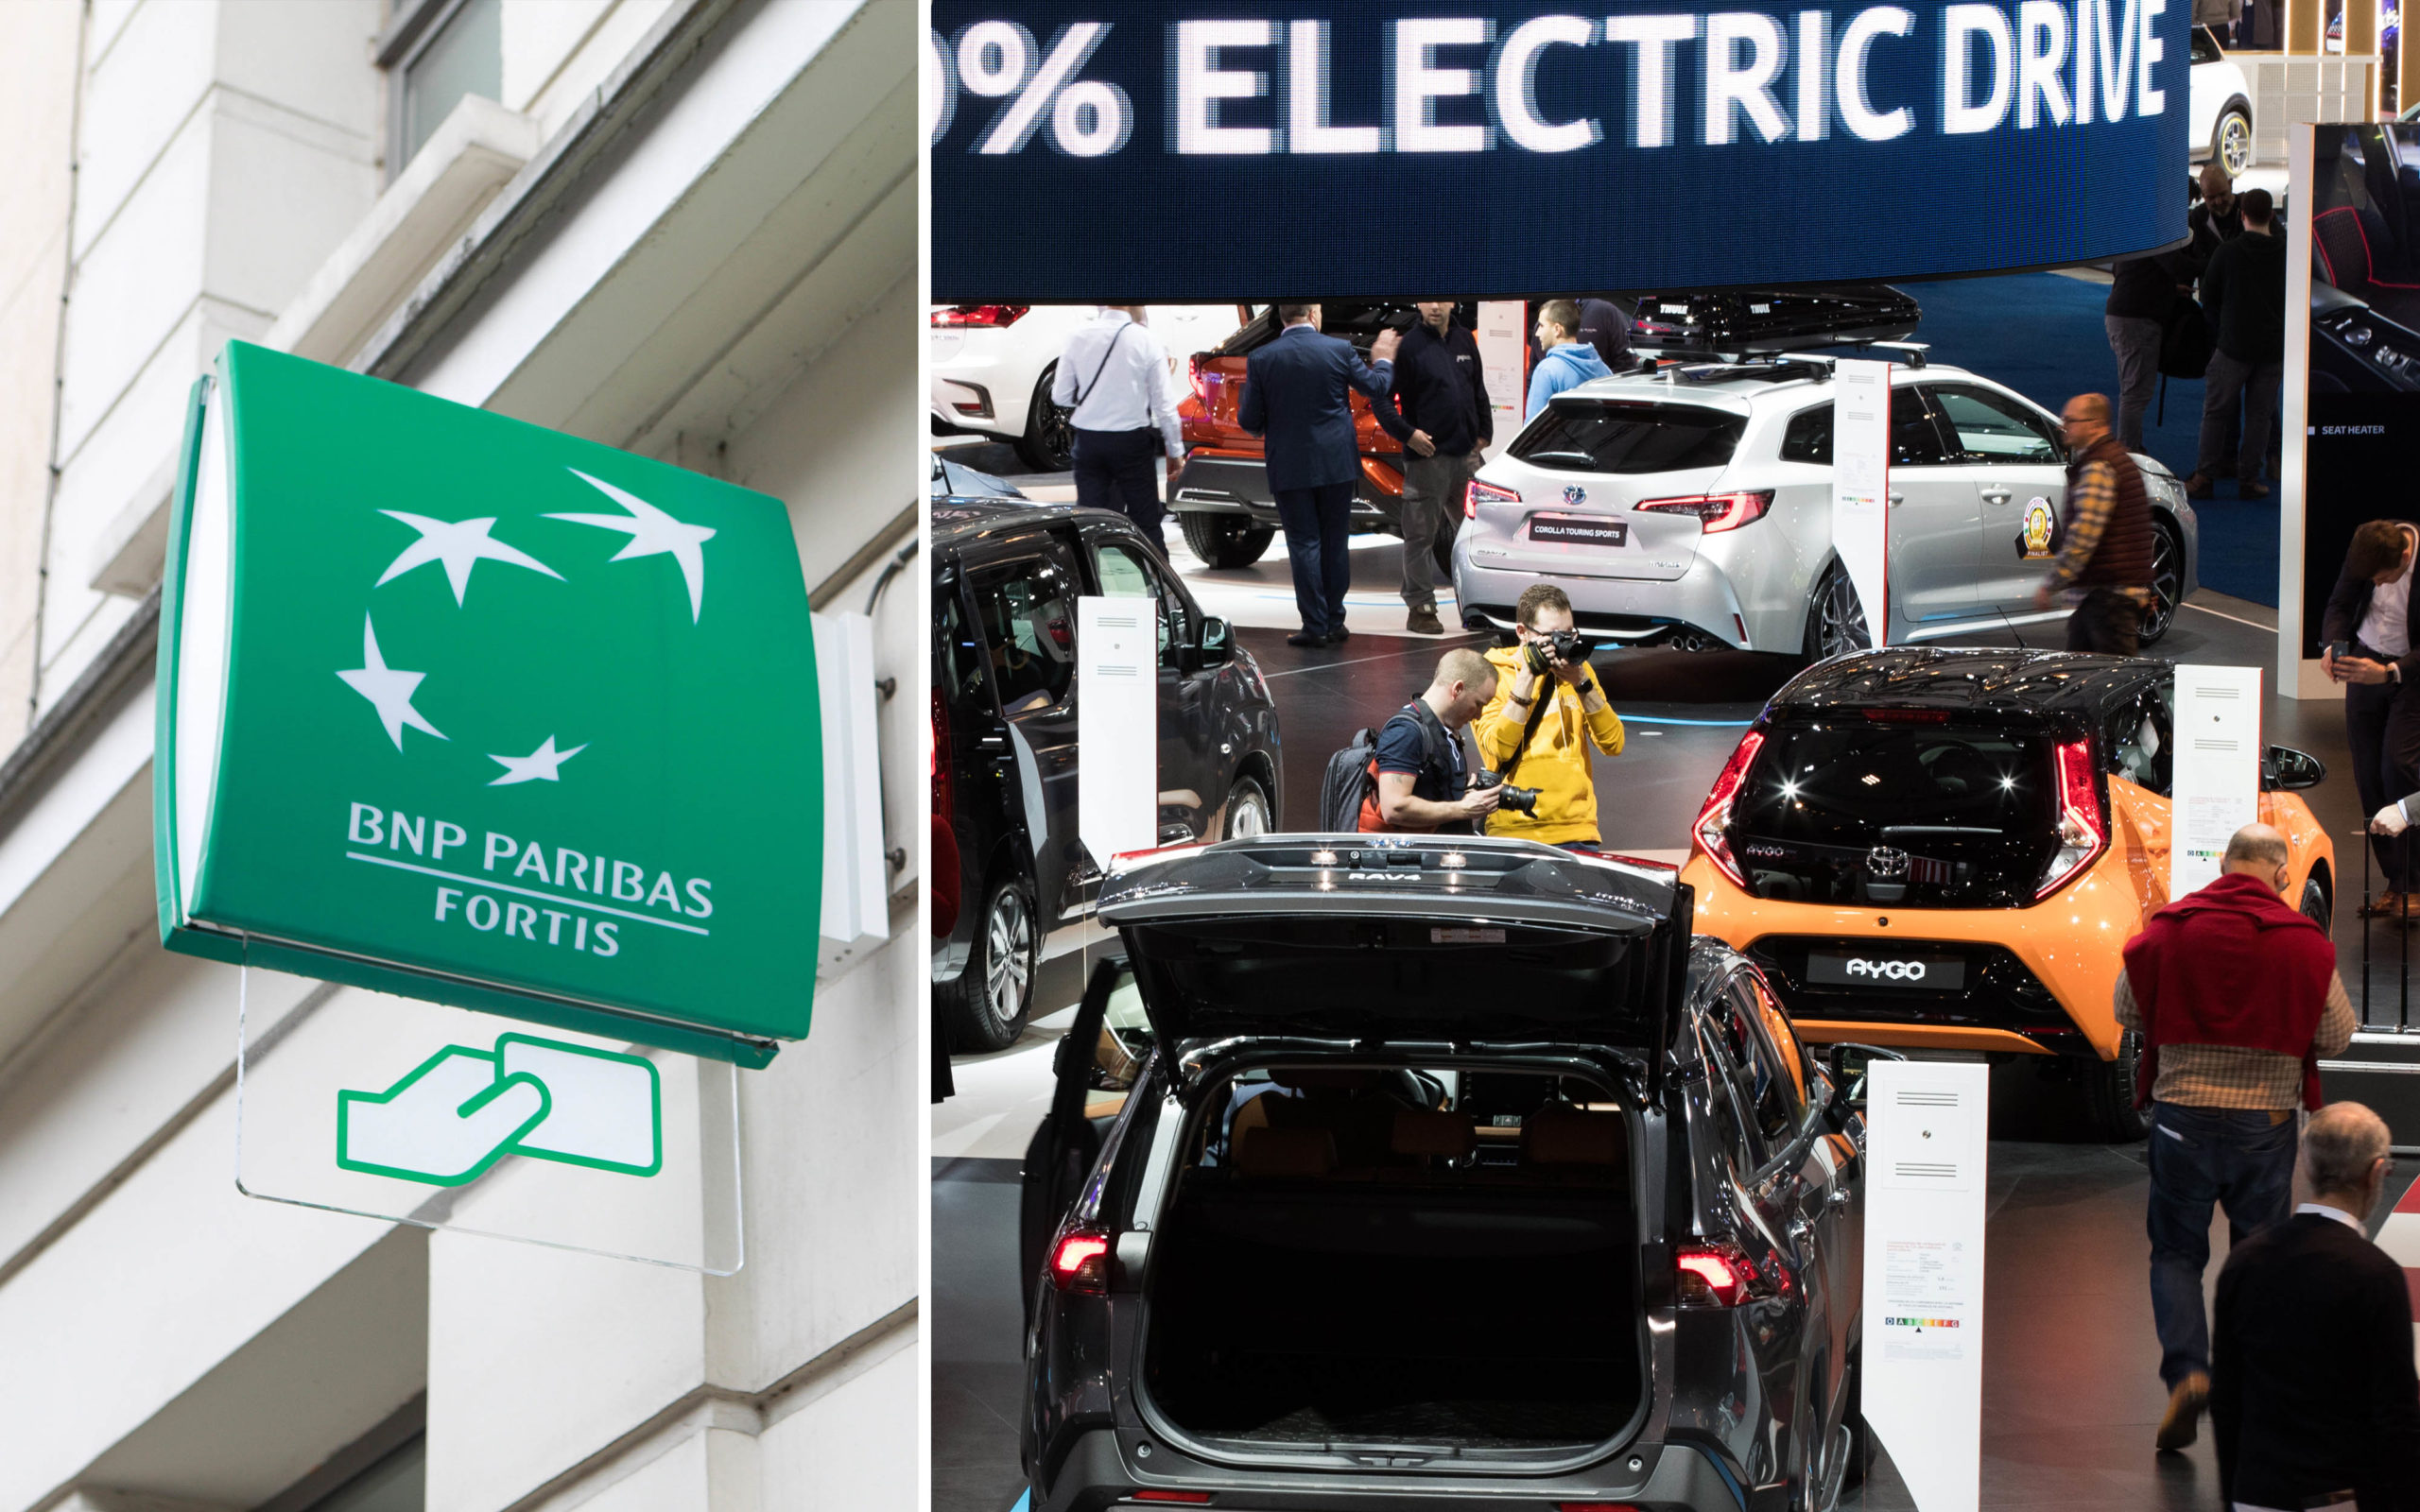 BNP Paribas Fortis propose le taux le plus bas jamais atteint pour un prêt "écomobilité" pour véhicules électriques